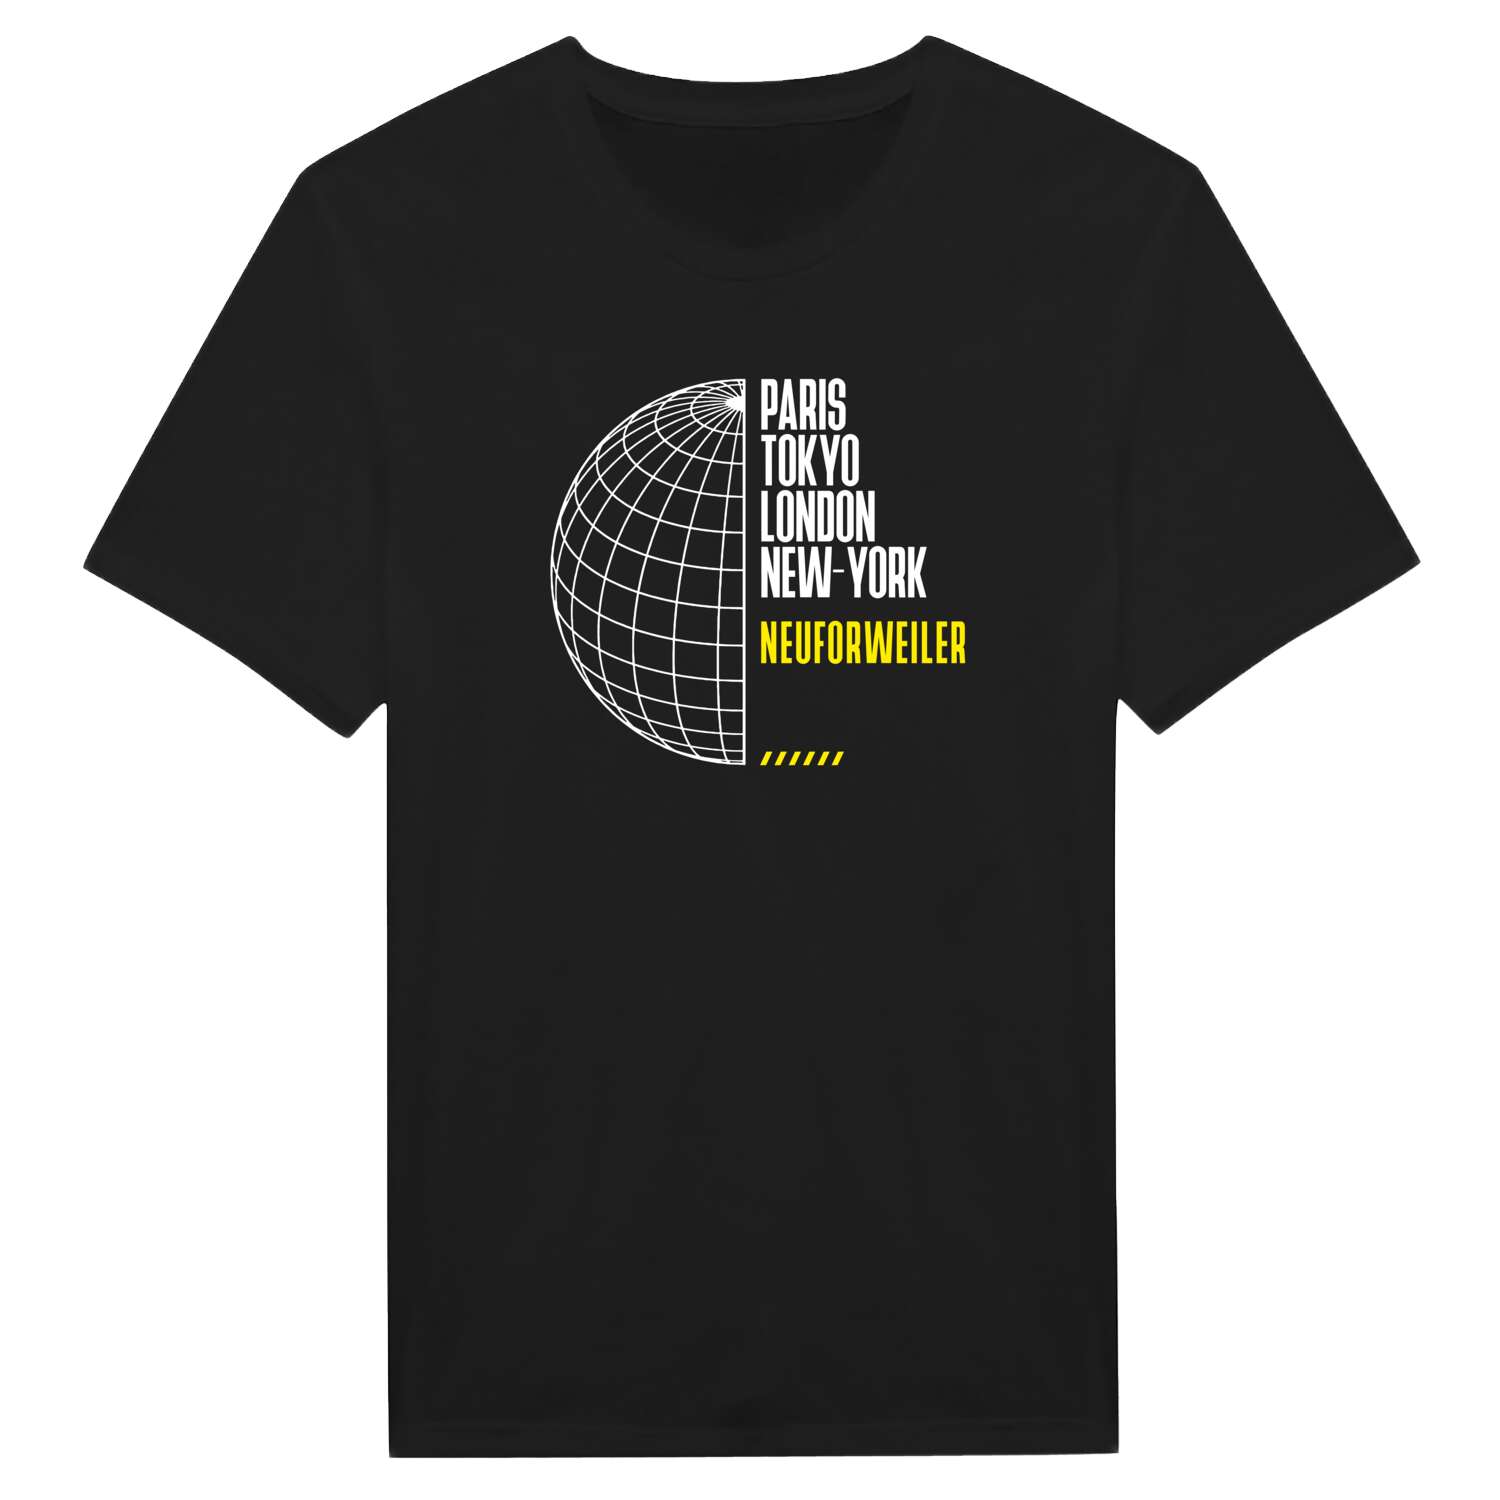 Neuforweiler T-Shirt »Paris Tokyo London«